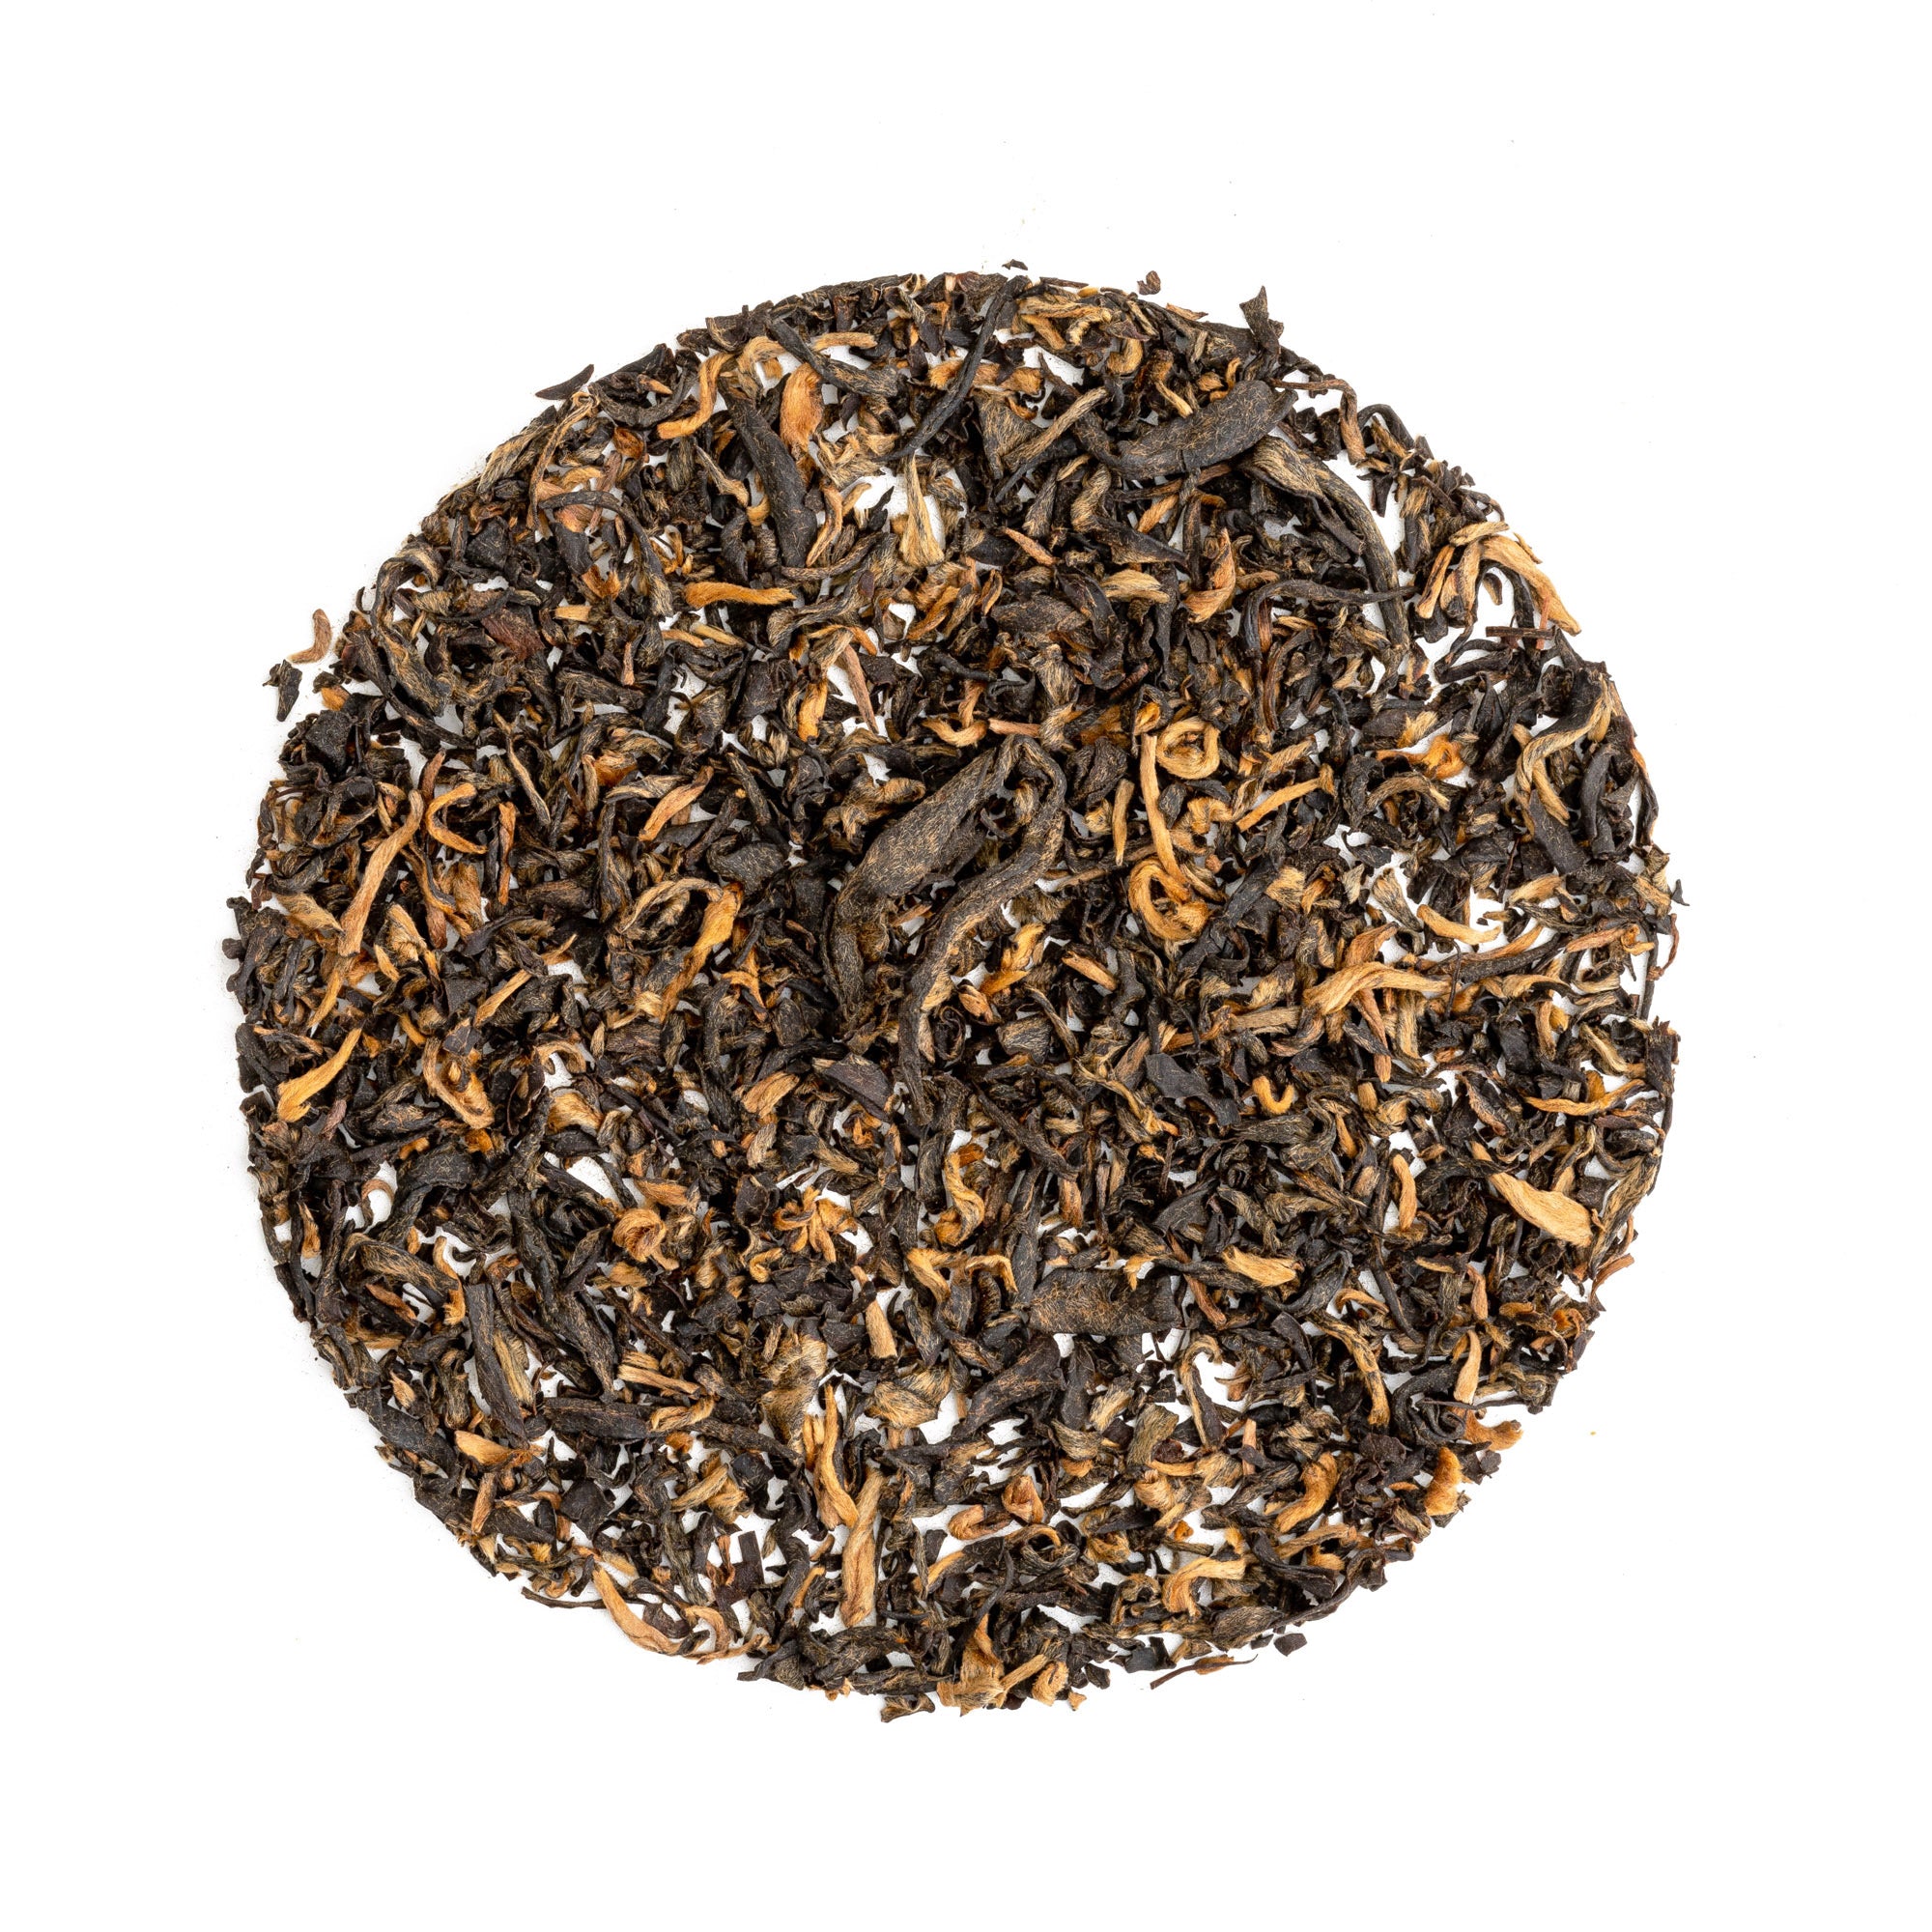 Organic Irish Breakfast - Organic Loose Leaf Black Tea - Breakfast Tea - Yigde Choice - Golden Pekoe Black Tea | Heavenly Tea Leaves